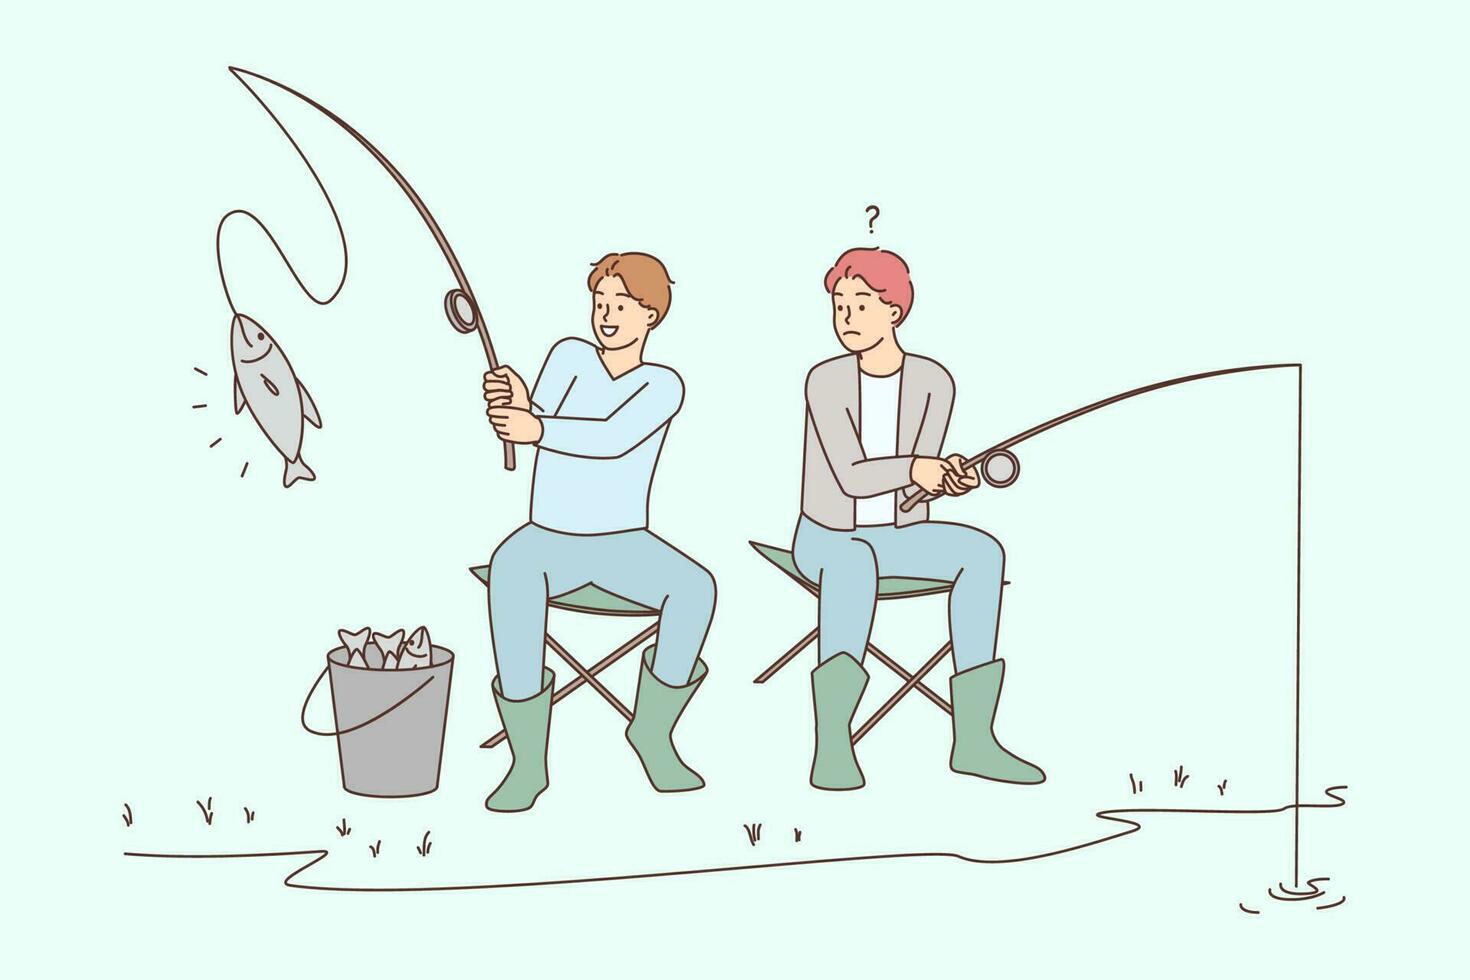 hombres sentado en río banco pesca. chico frustrado con amigo pescado atrapar. pescadores pasatiempo al aire libre. vector ilustración.